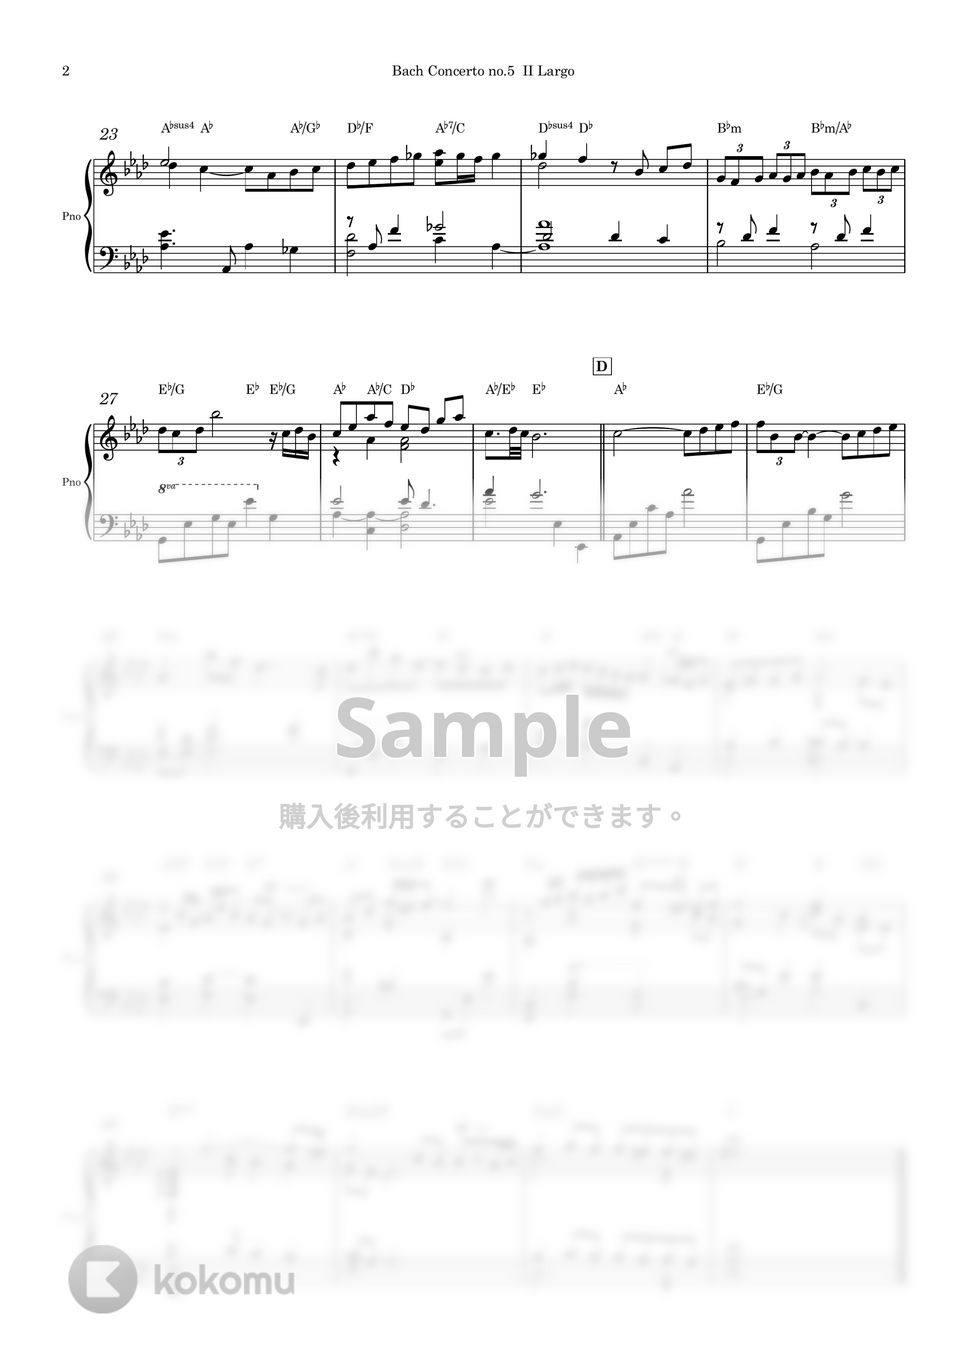 バッハ - ピアノコンチェルト 第5番 第2楽章 (ピアノソロ) by Piano QQQ